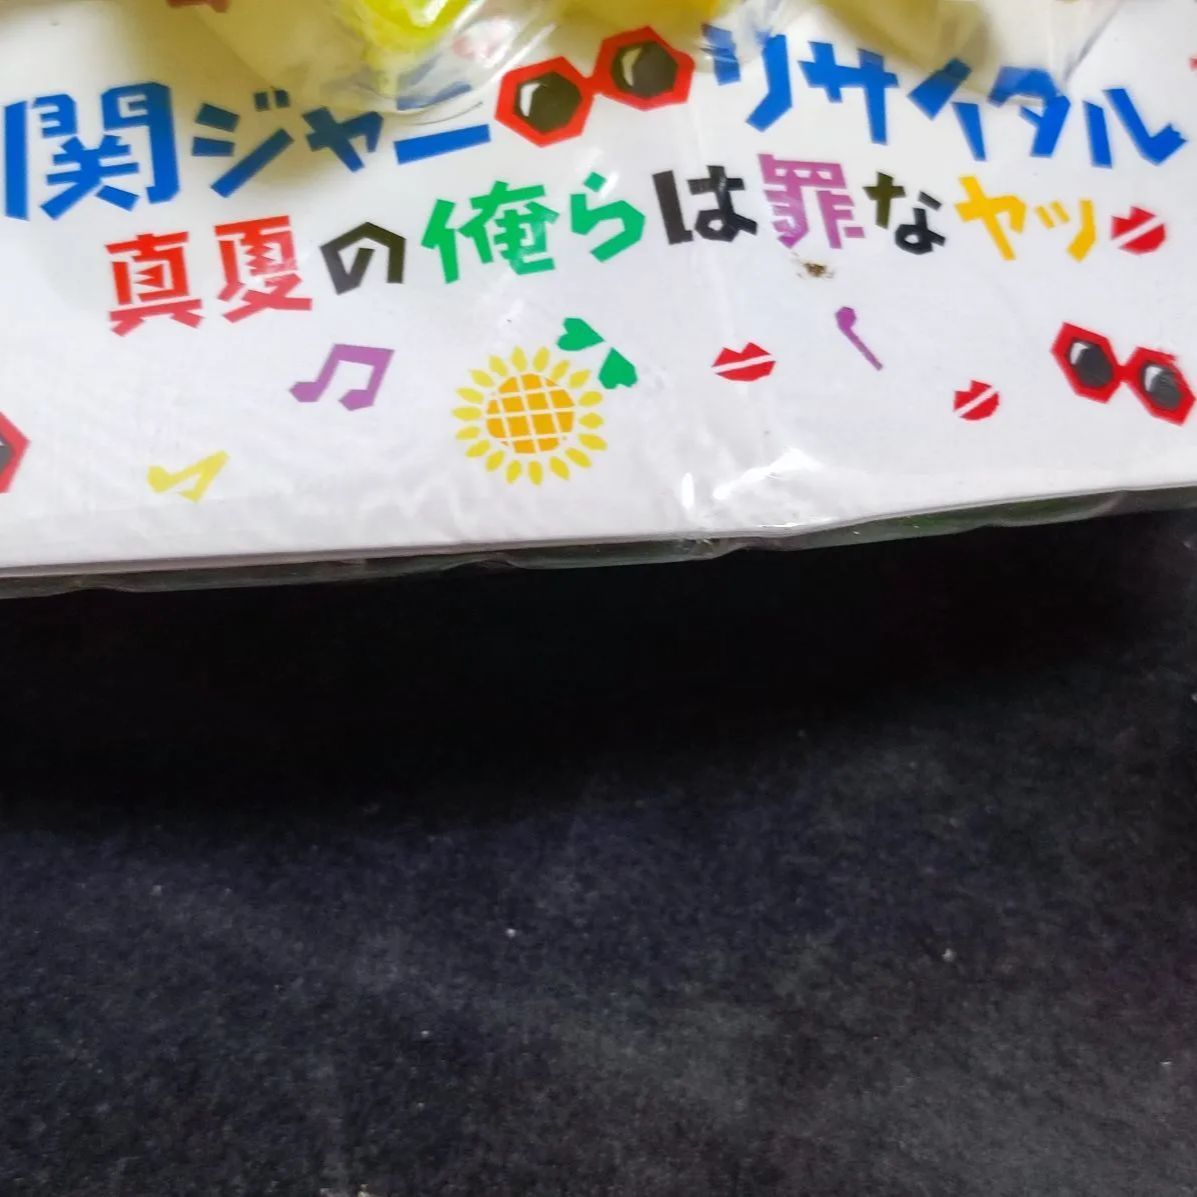 2246 関ジャニ∞ オリジナルペンライト 「関ジャニ∞ リサイタル 真夏